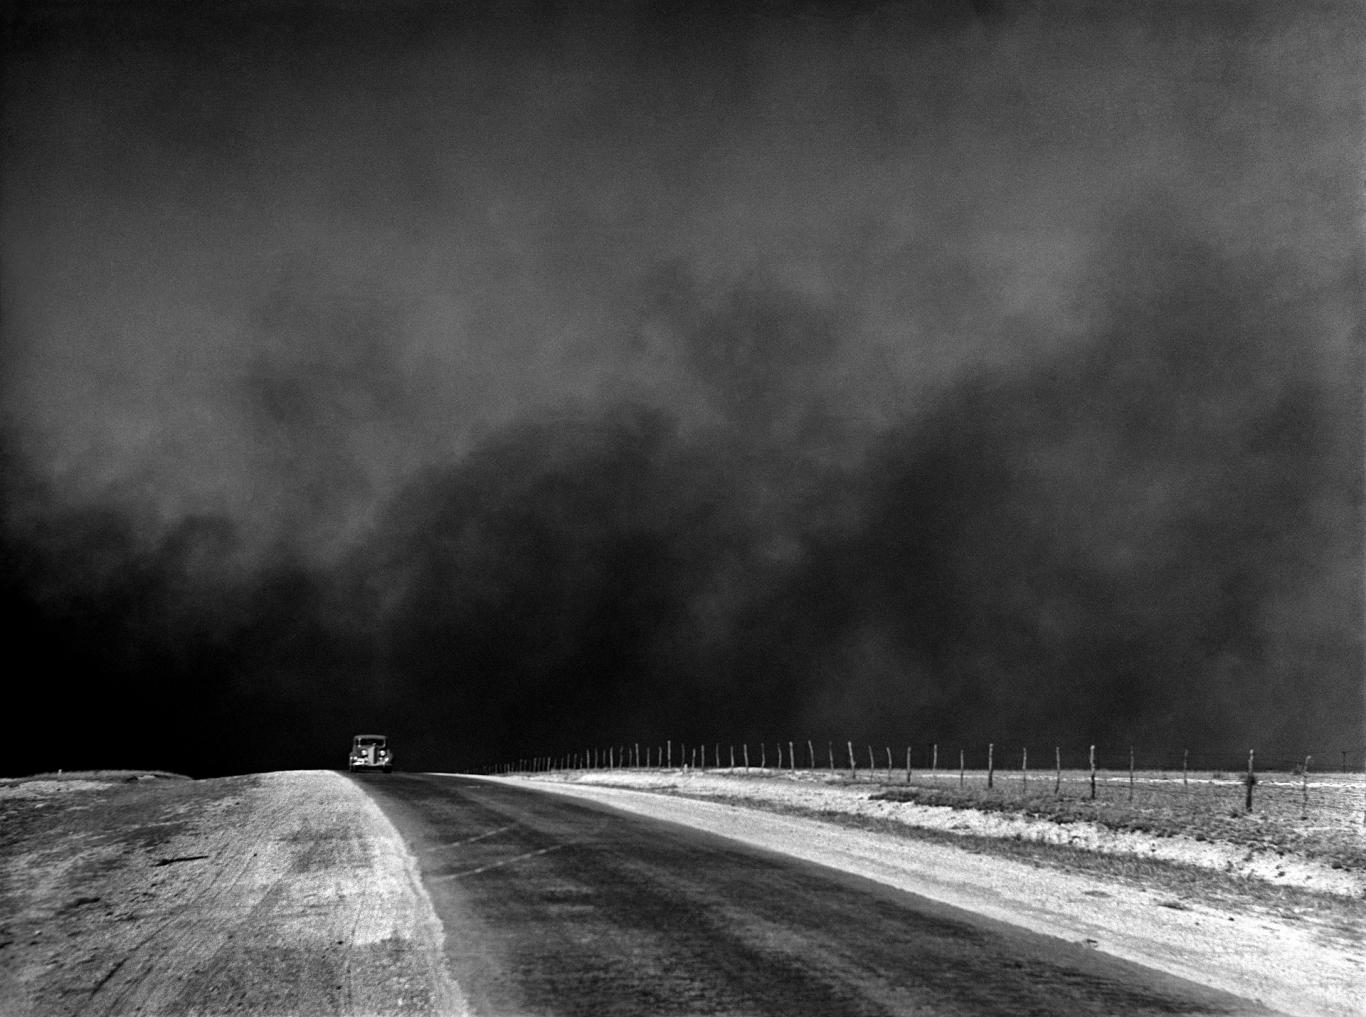 Imagen en blanco y negro de una carretera con un coche y el cielo lleno de polvo